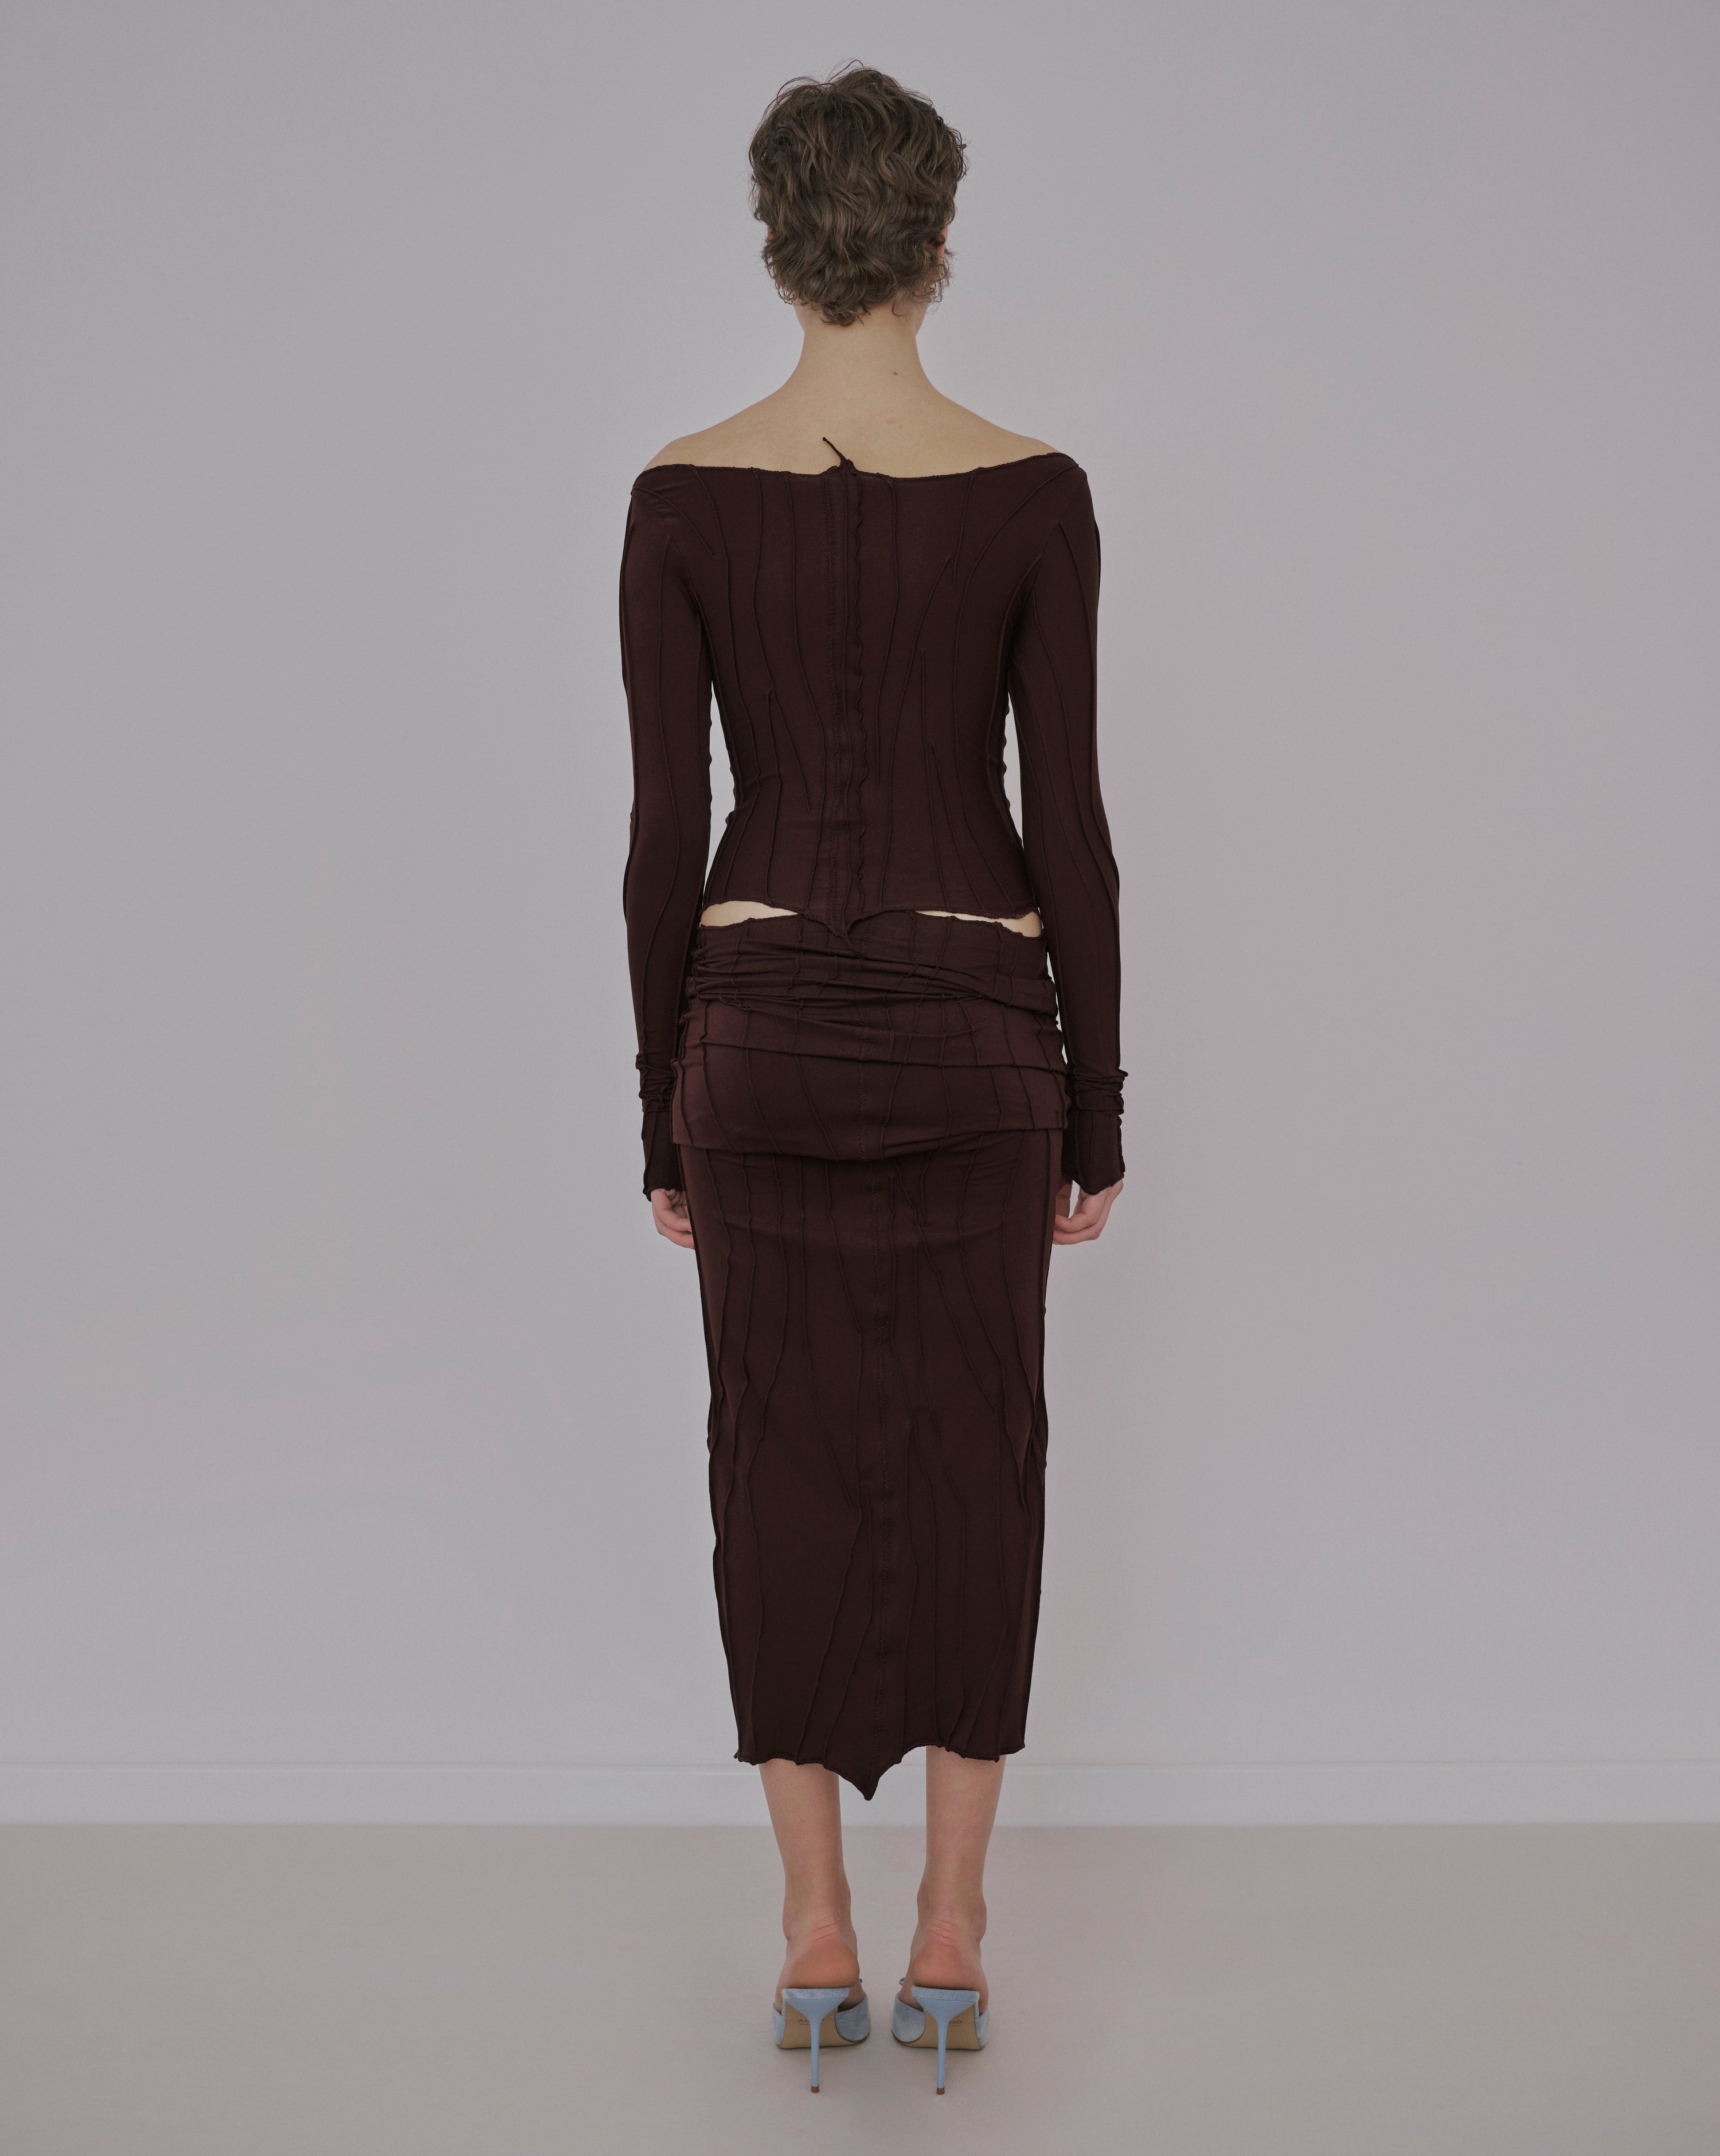 Chocolate Tube Dress/Skirt